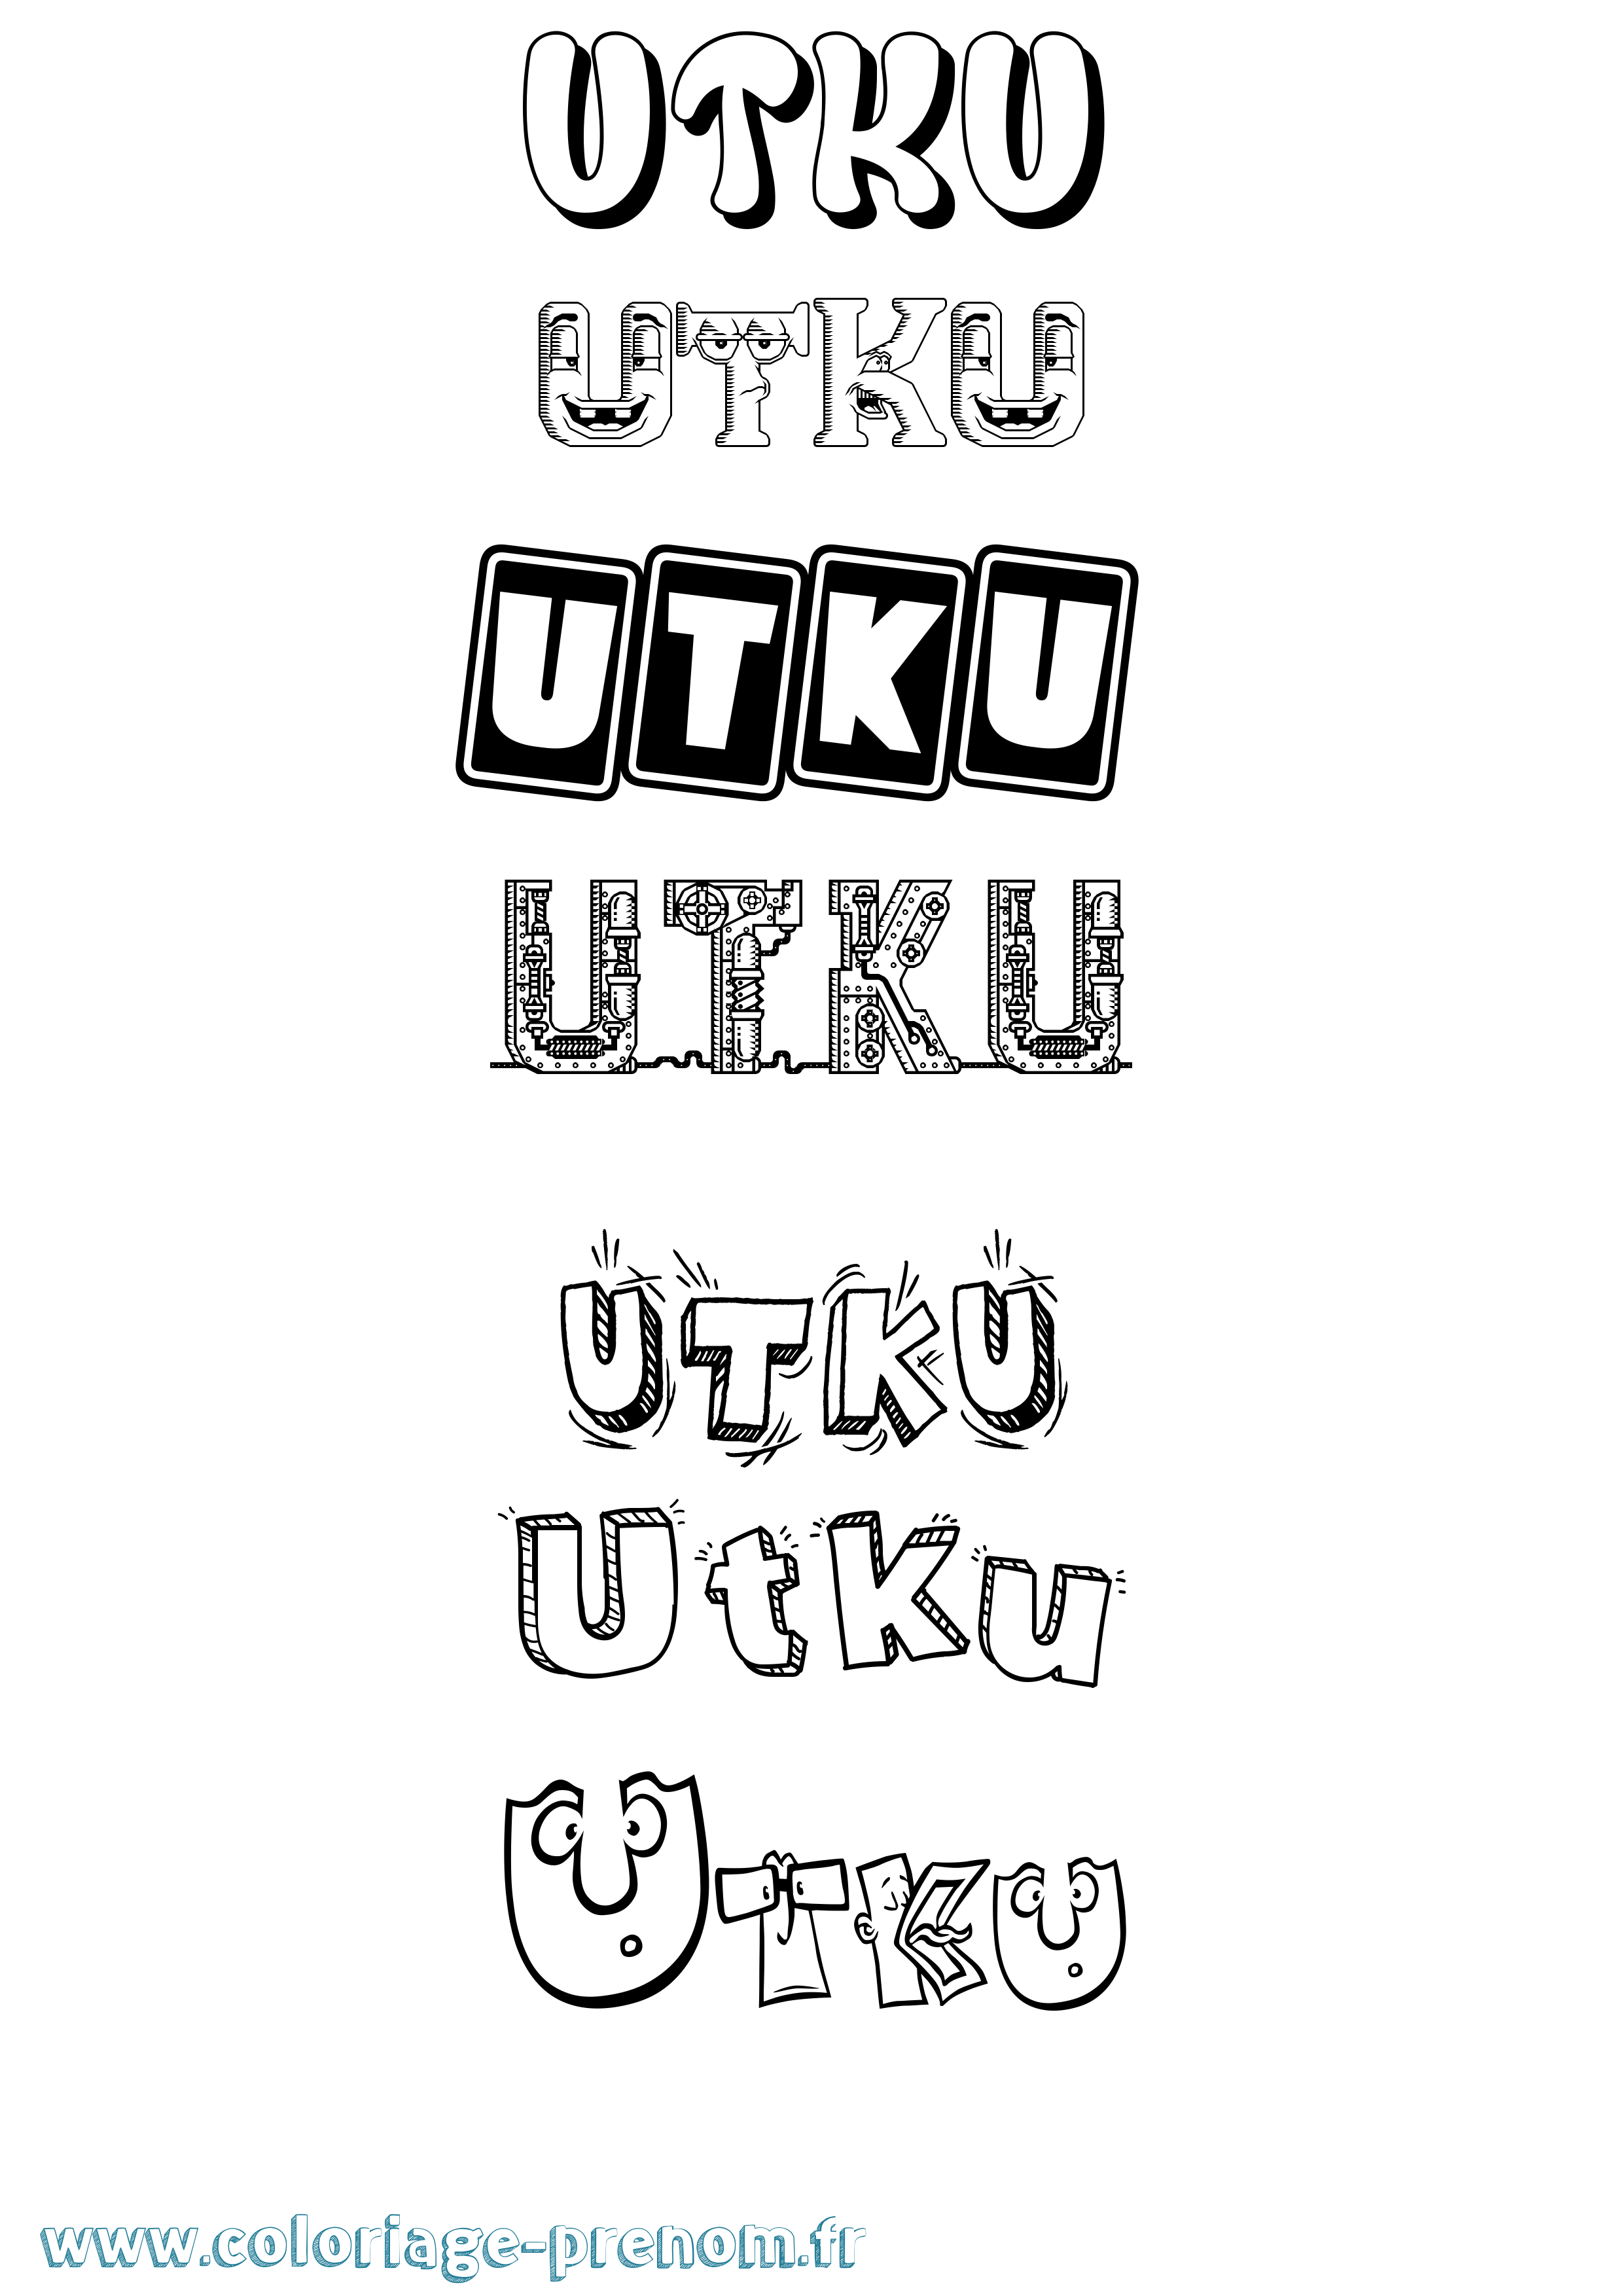 Coloriage prénom Utku Fun